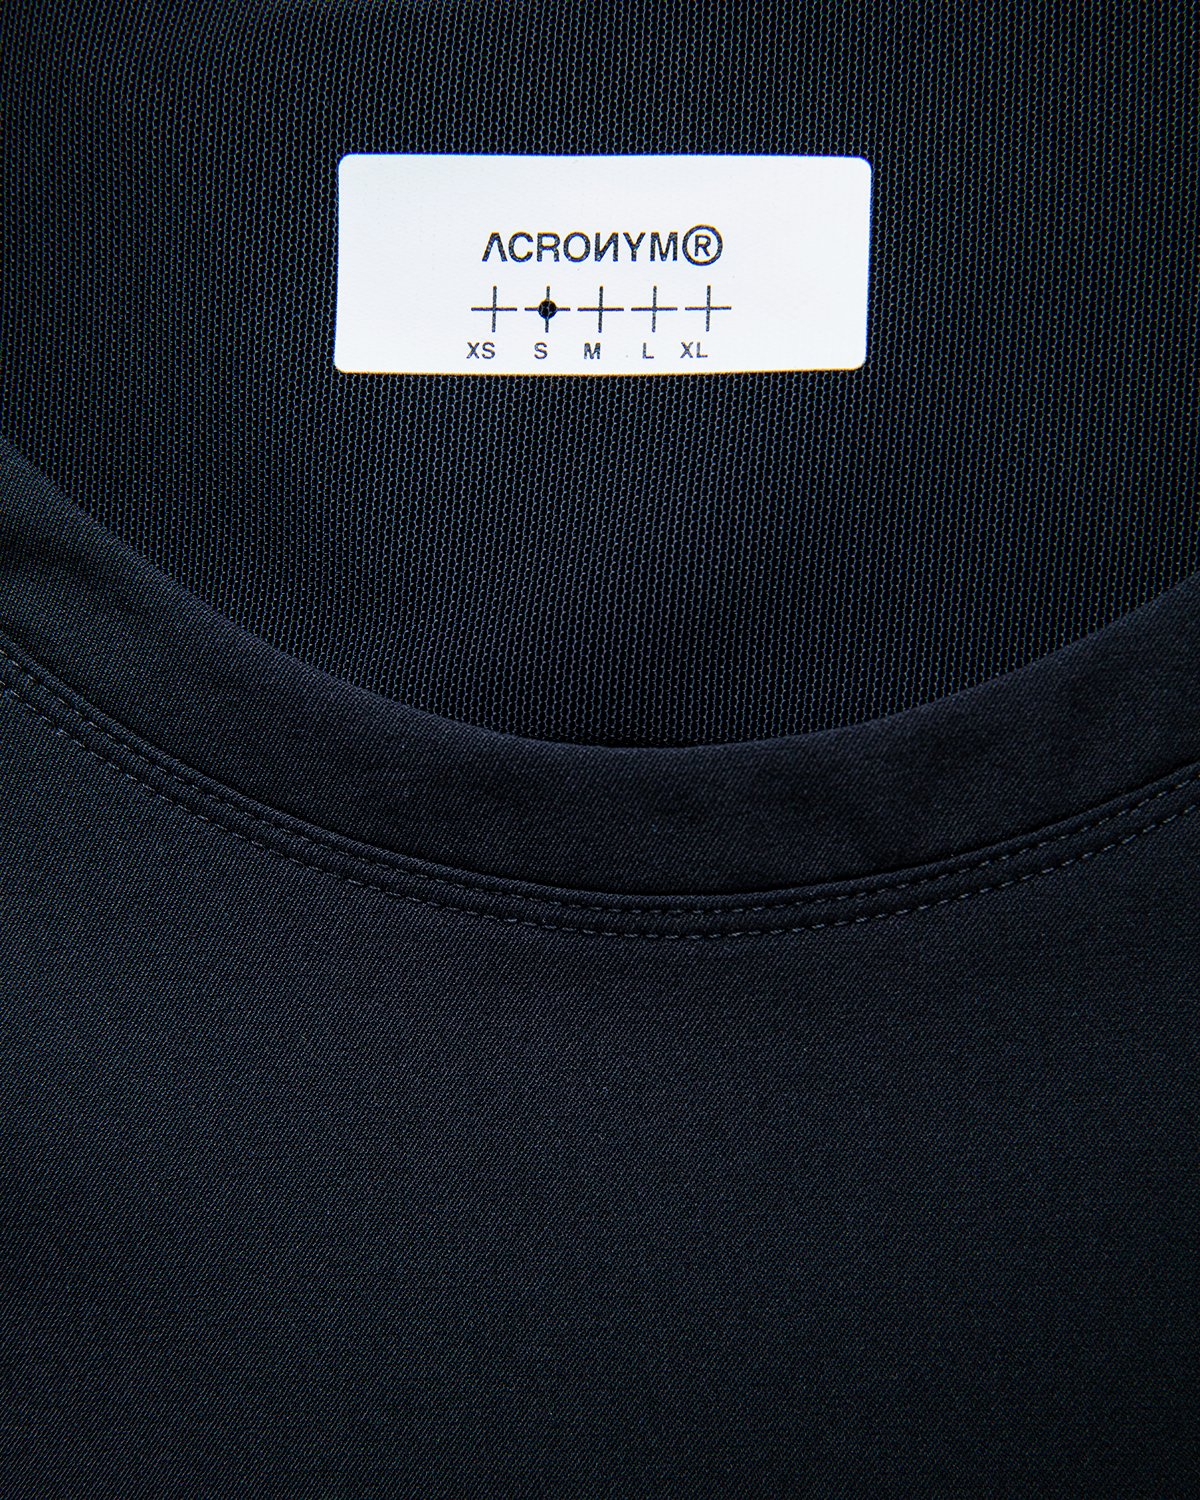 ACRONYM - S24-DS Short Sleeve Black - Clothing - Black - Image 5